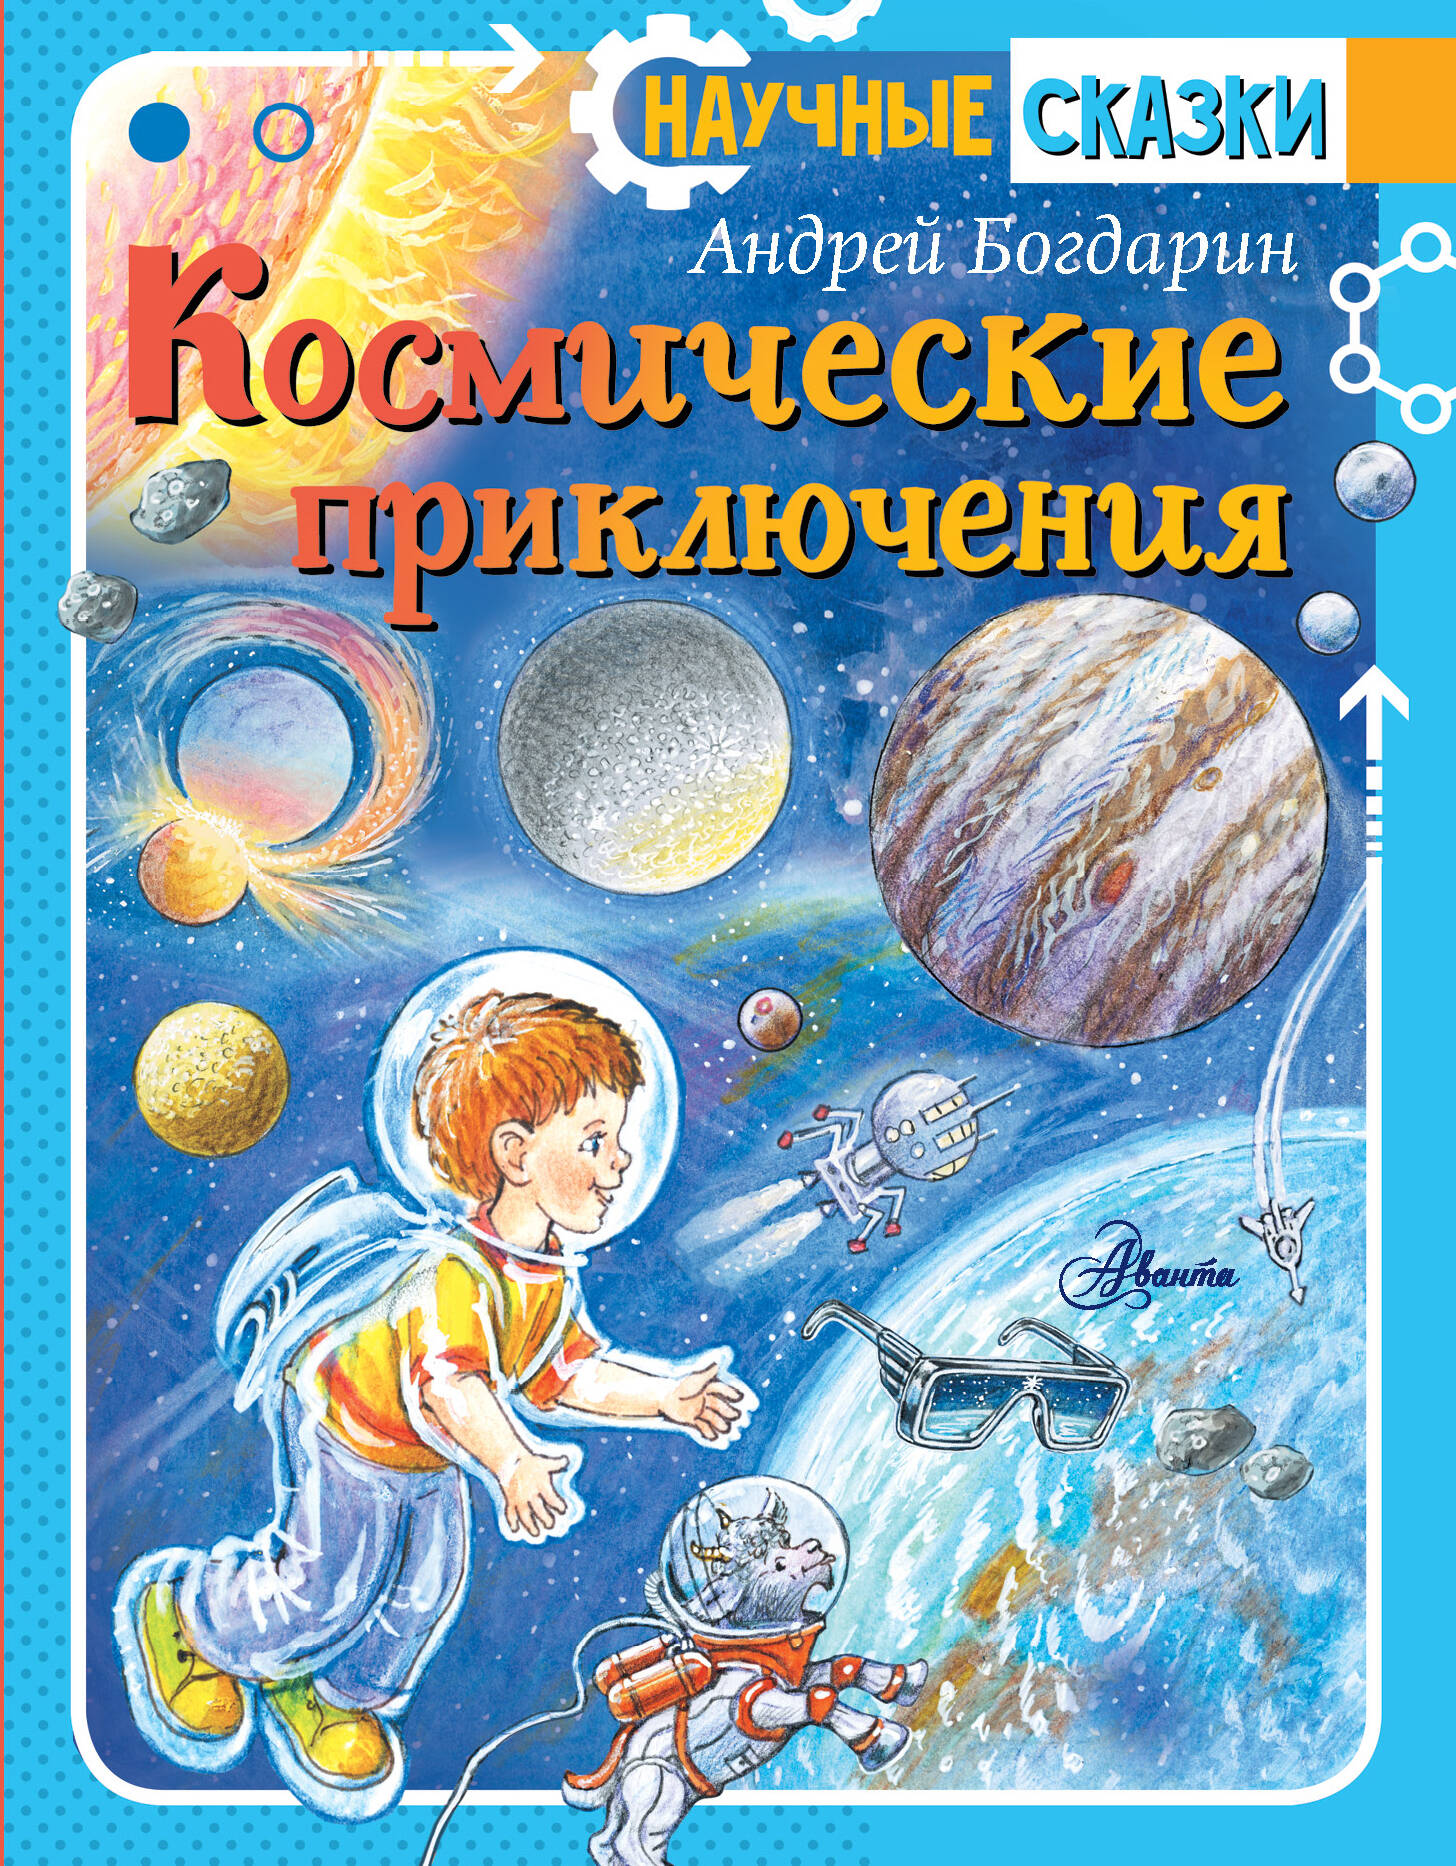 Богдарин Андрей Юрьевич Космические приключения - страница 0